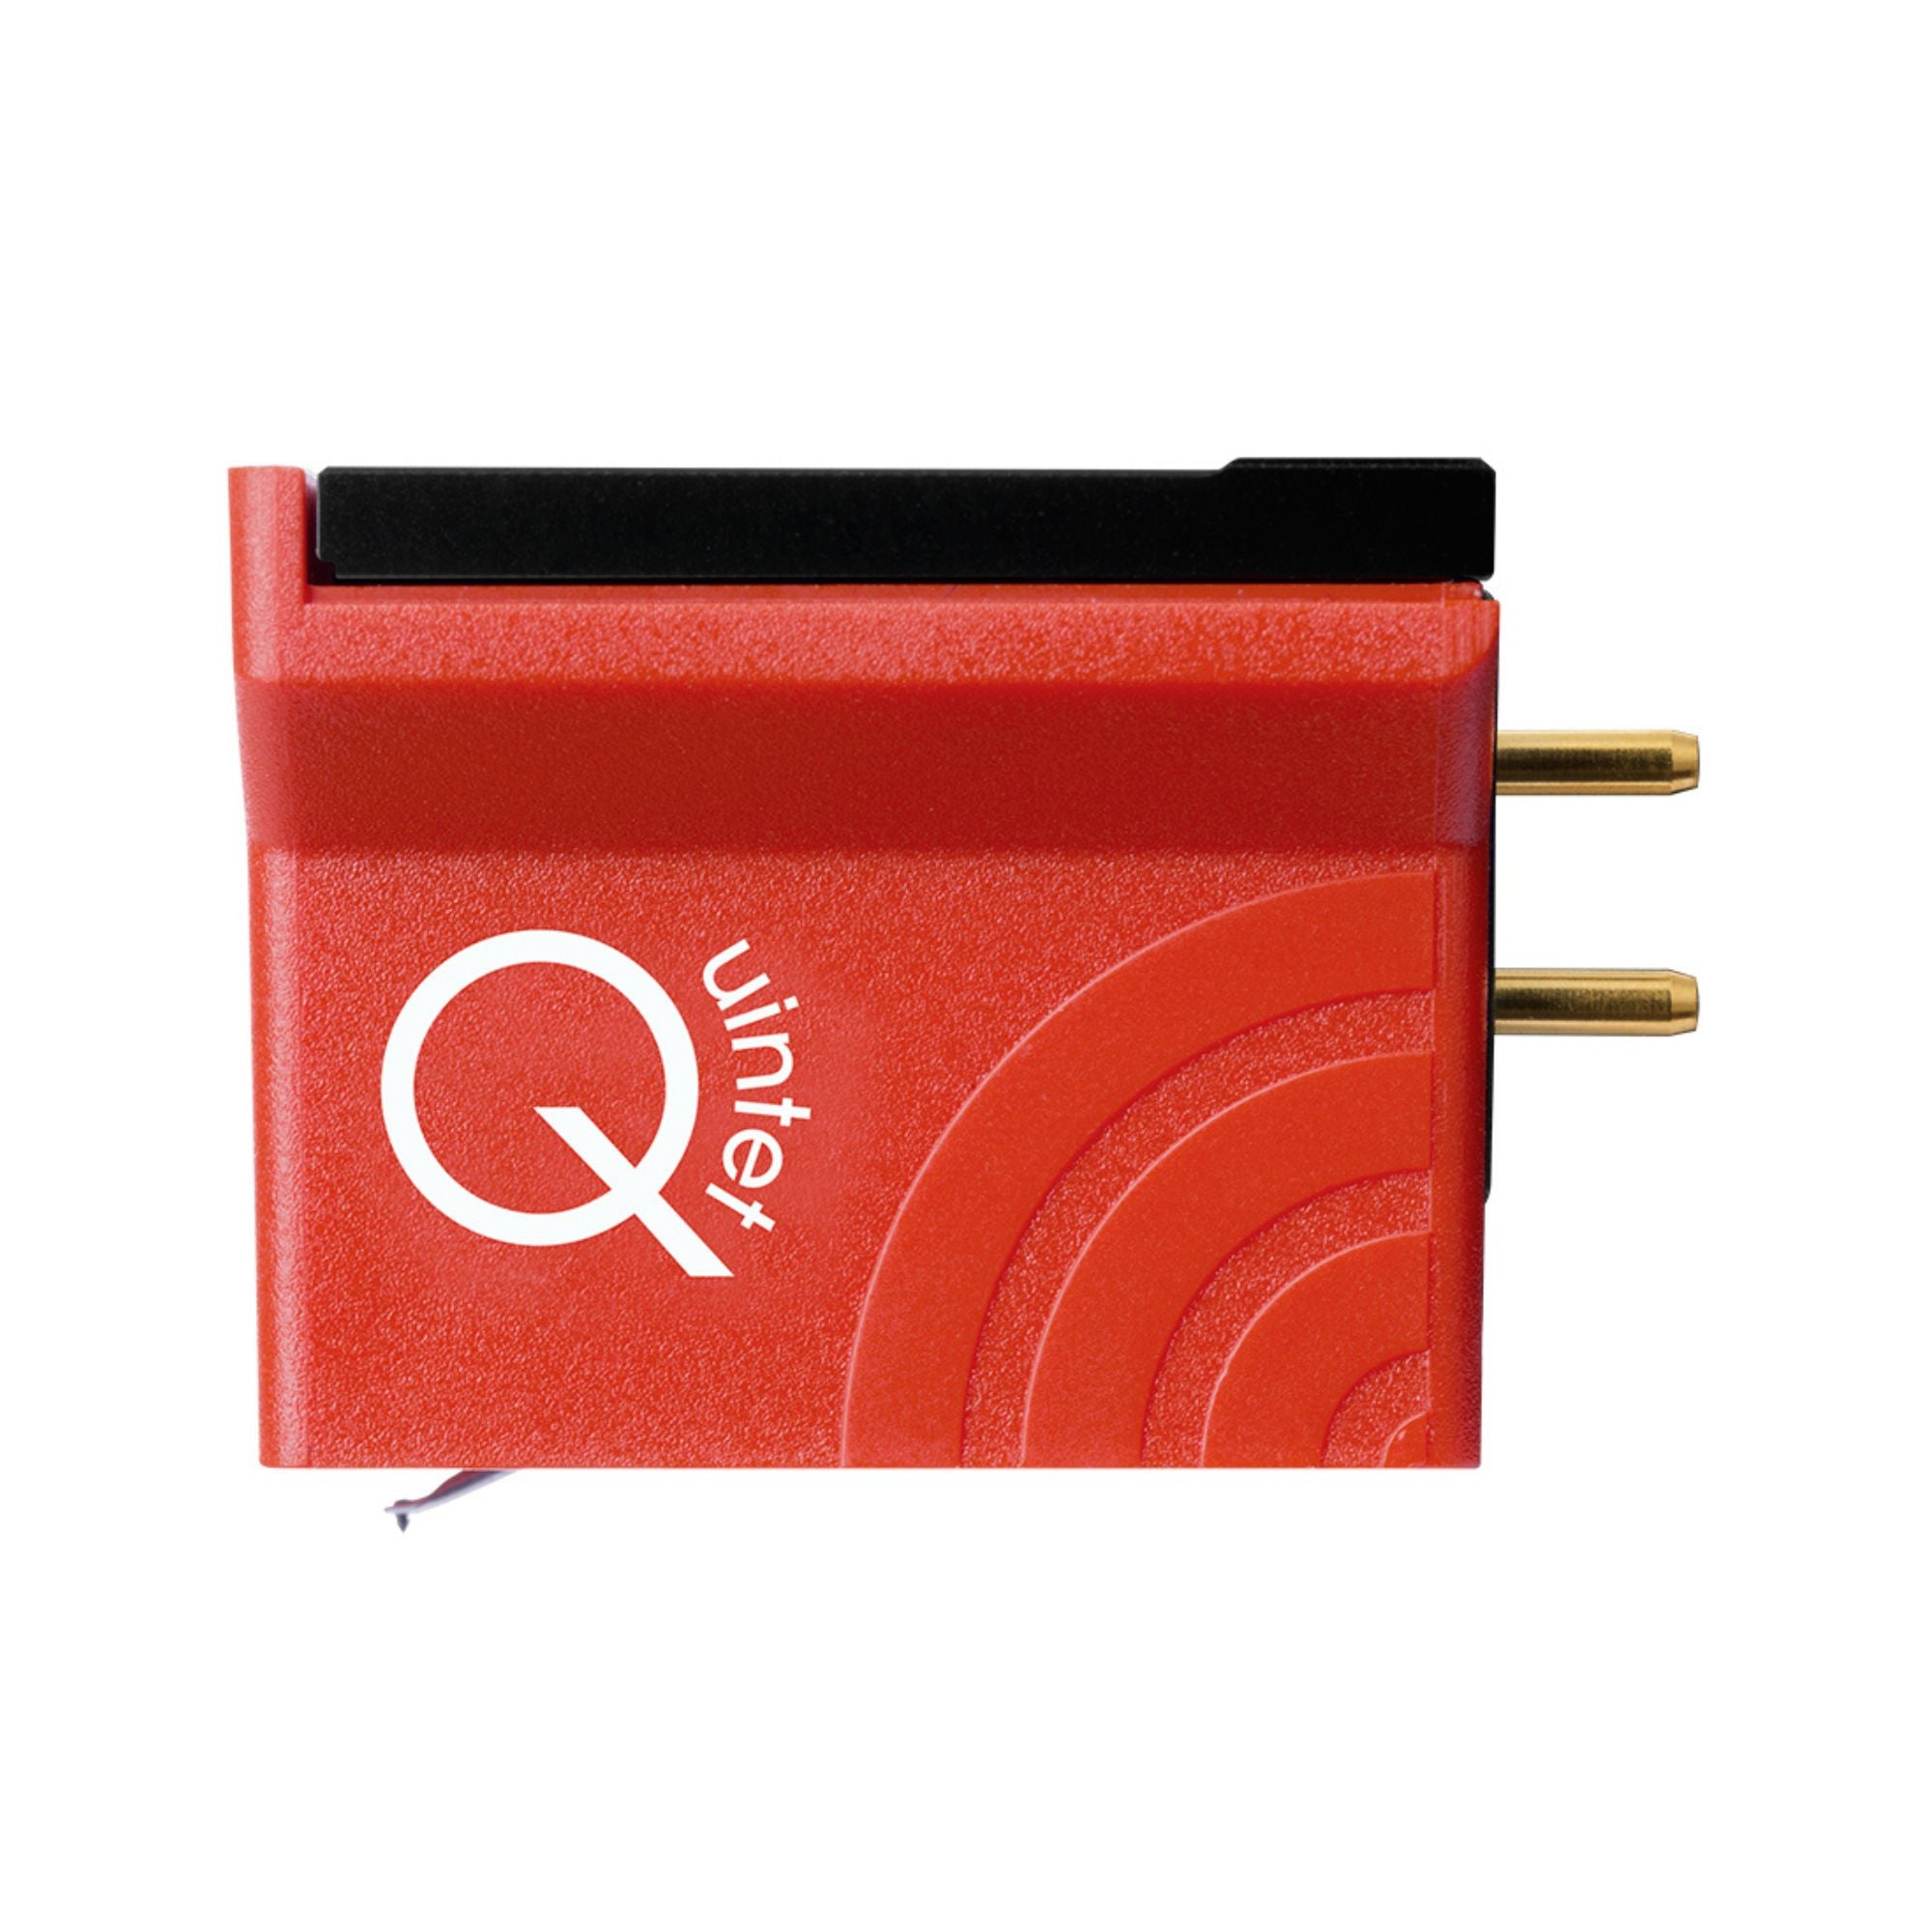 Ortofon MC Quintet Red, Ortofon, Turntable Accessories - AVStore.in